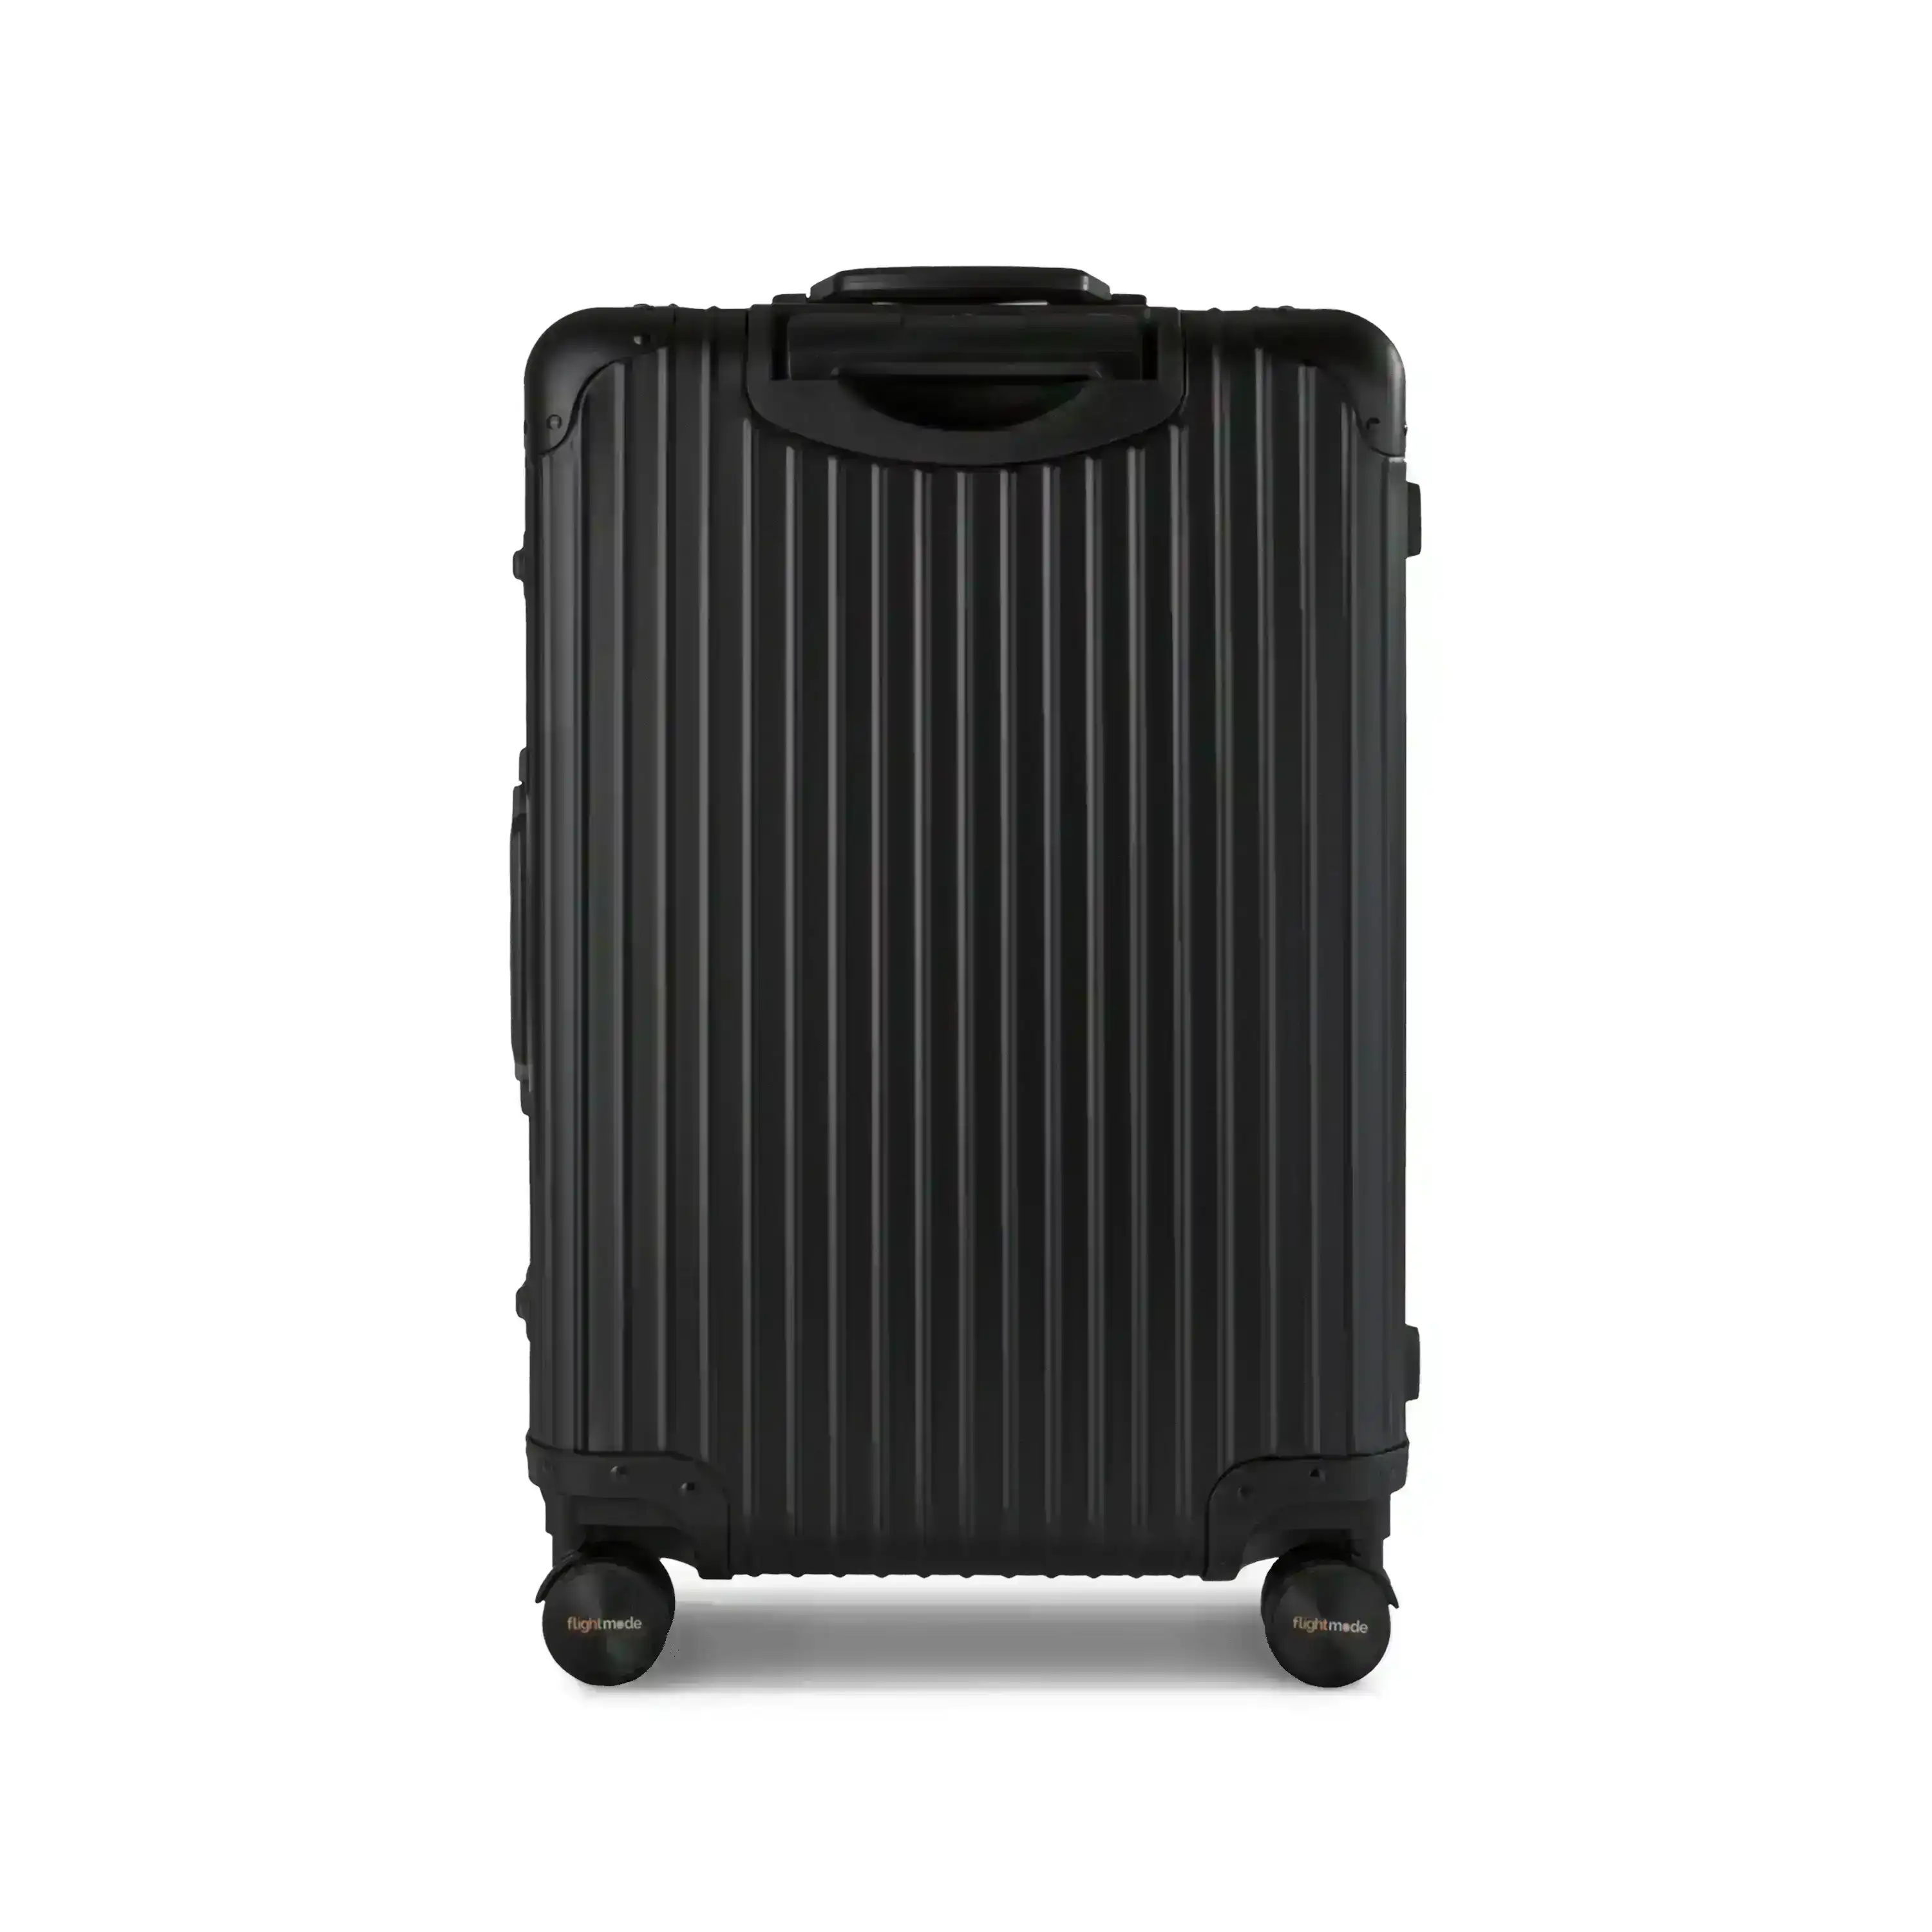 Flightmode Travel Suitcase Large